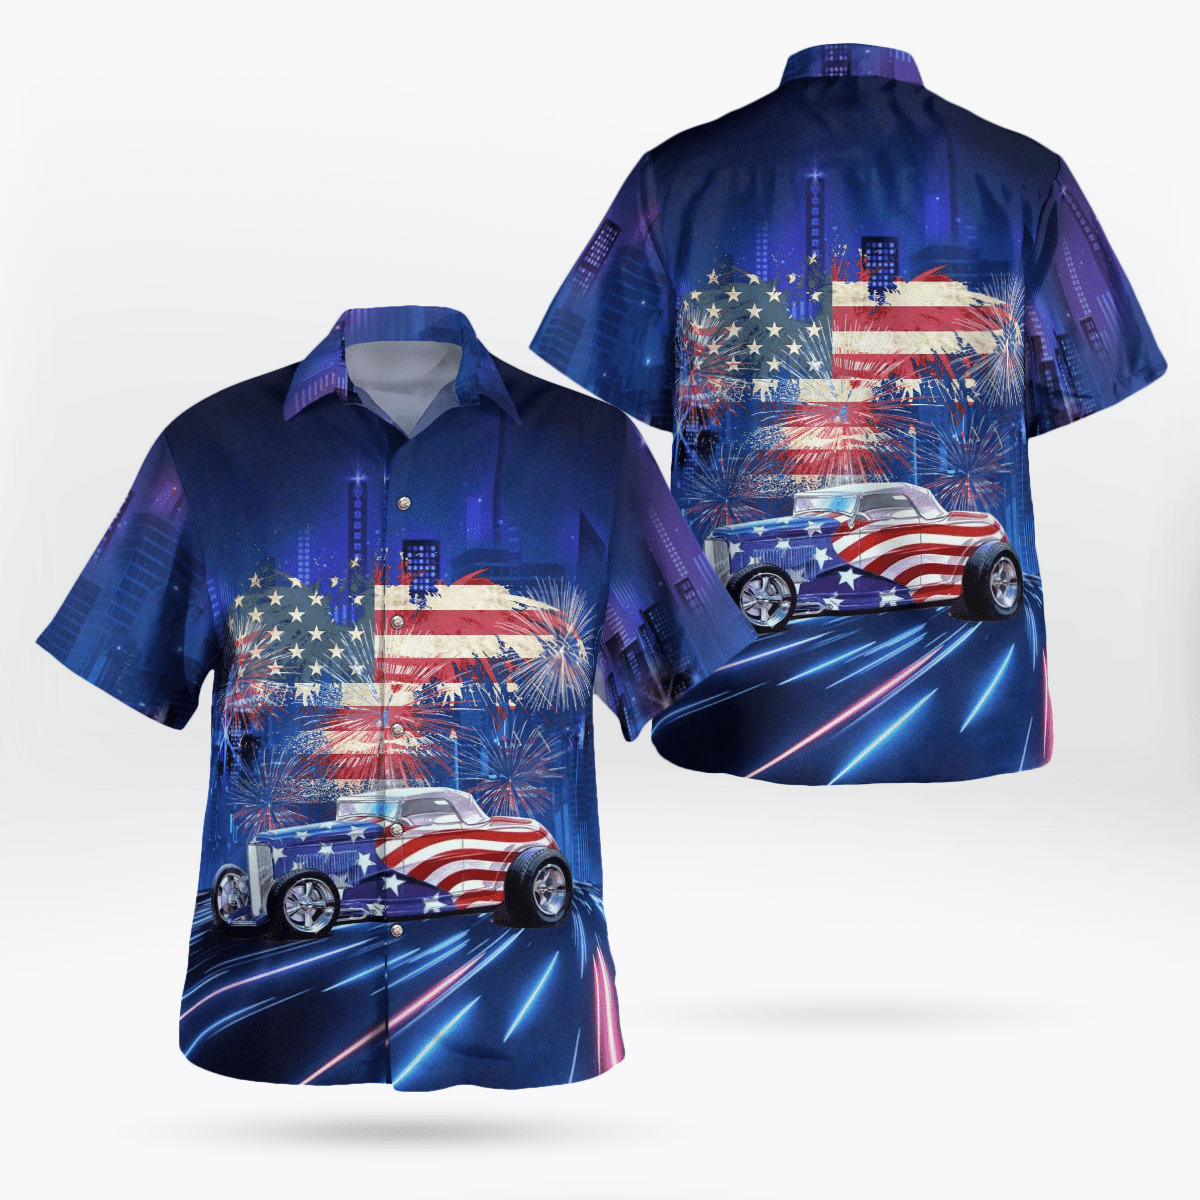 American flag and hot rod Hawaiian shirt